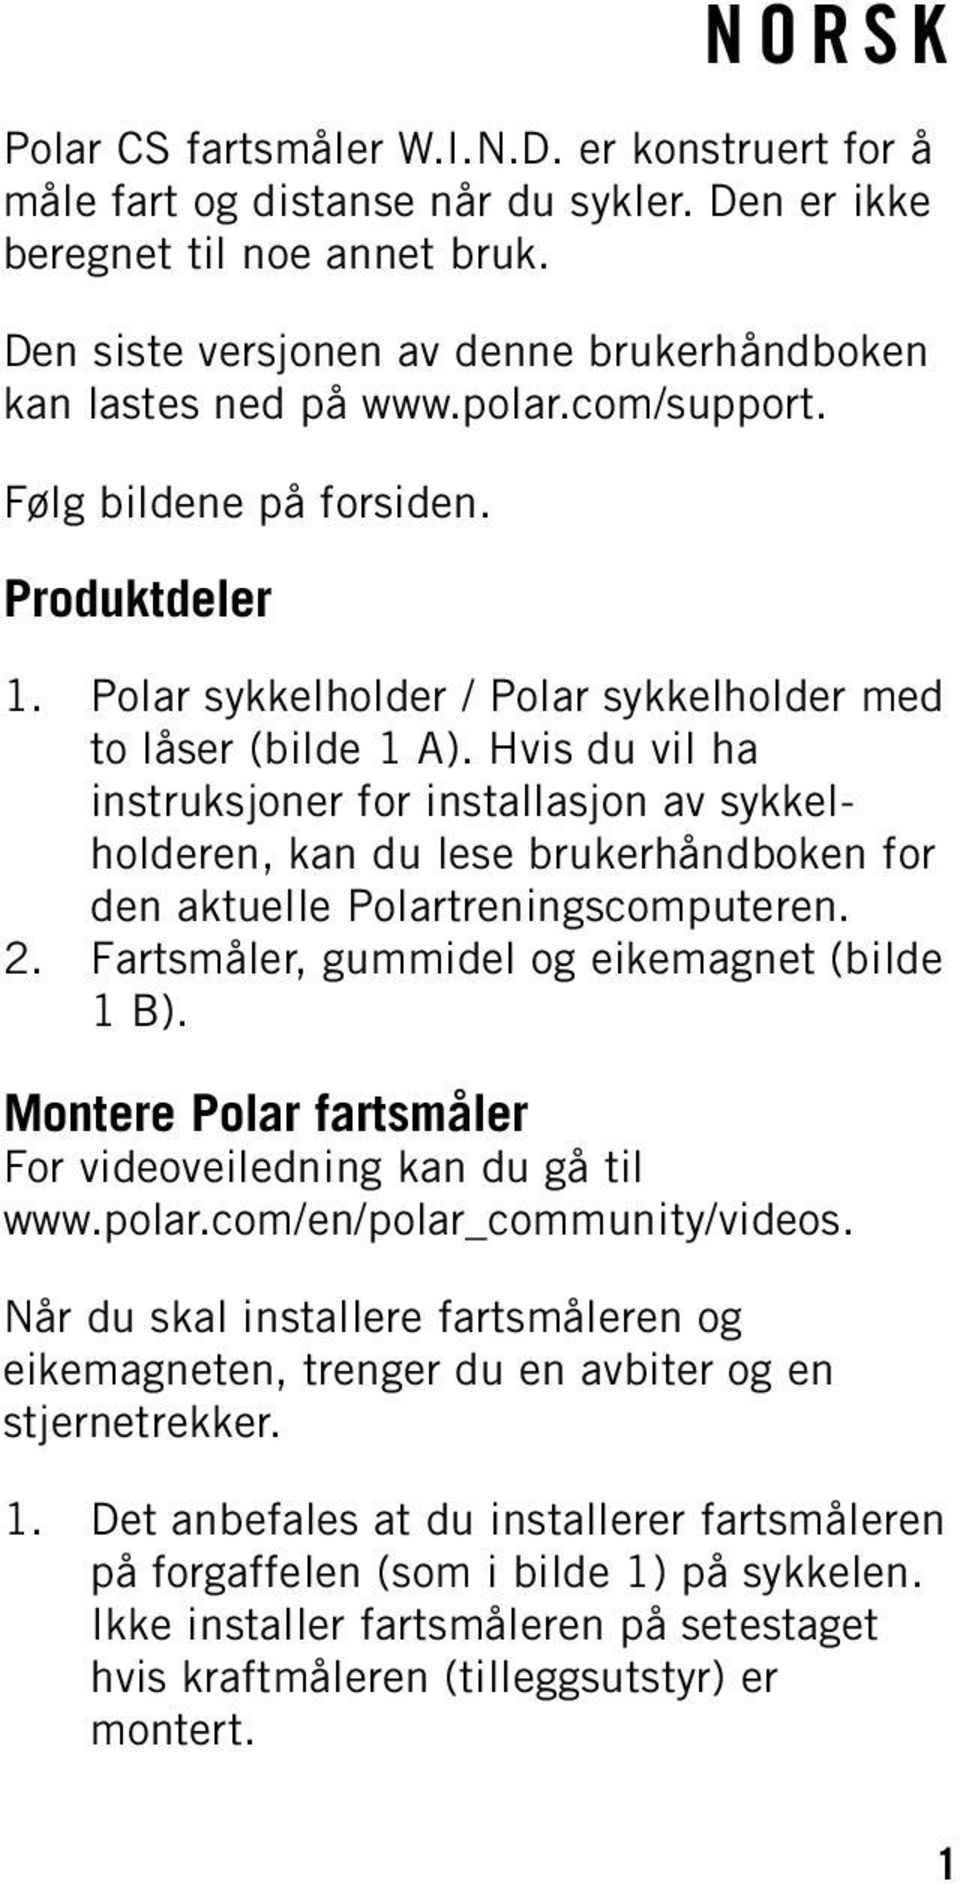 Hvis du vil ha instruksjoner for installasjon av sykkelholderen, kan du lese brukerhåndboken for den aktuelle Polartreningscomputeren. 2. Fartsmåler, gummidel og eikemagnet (bilde 1 B).